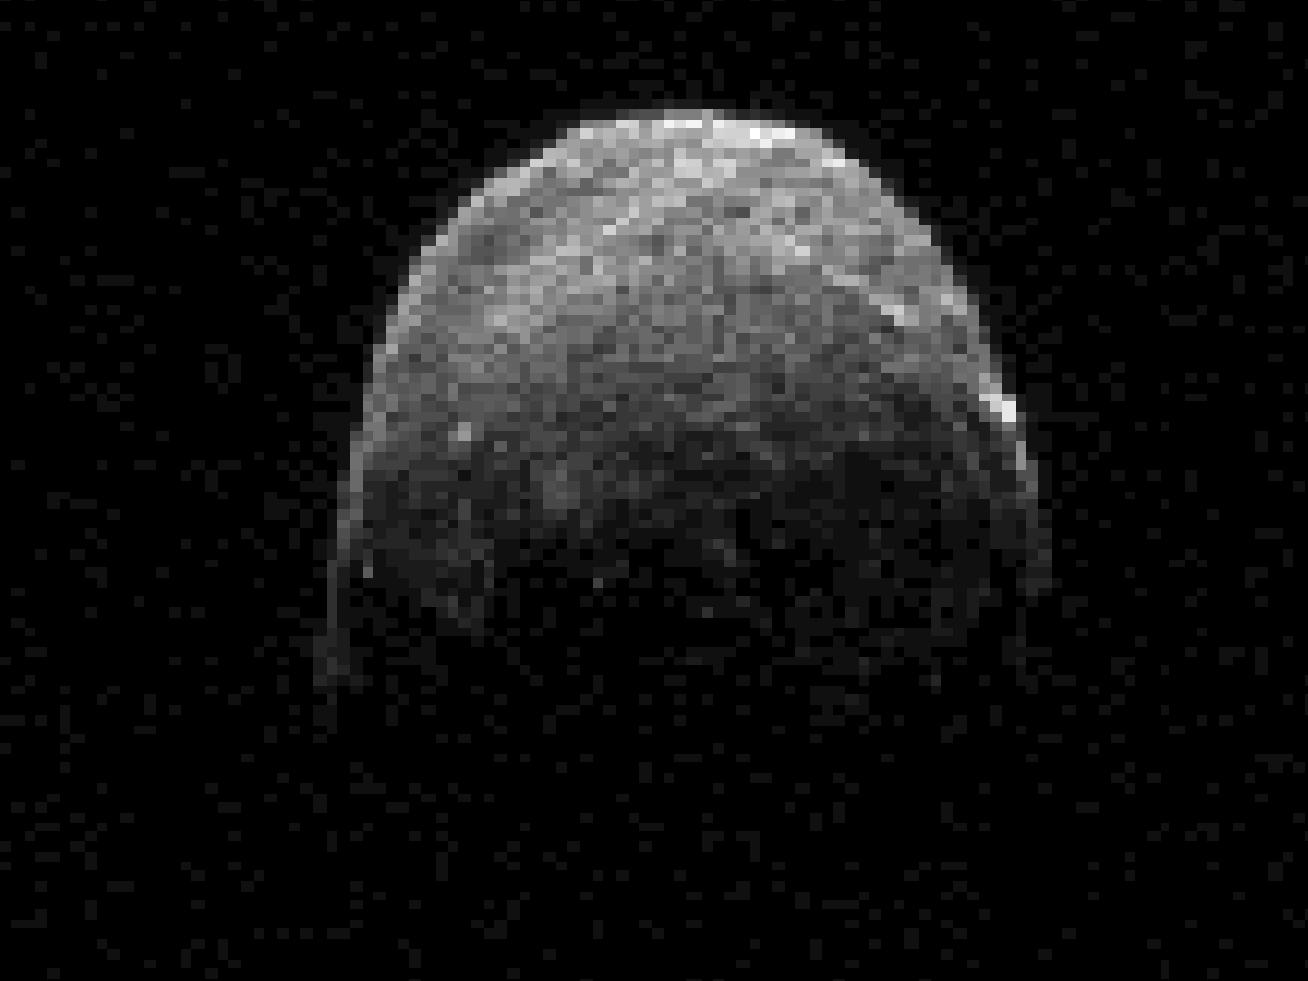 Nytt bilde: Radarbilde av 2005 YU55 tatt 07.11 kl. 20.45 norsk tid mens asteroiden var 3,6 måneavstander, 1,38 millioner kilometer, fra Jorden. Asteroiden er ganske rund, men vi ser minst ett stort krater (oppe til venstre) og en stor åsrygg (oppe til høyre). Foto: NASA/JPL-Caltech